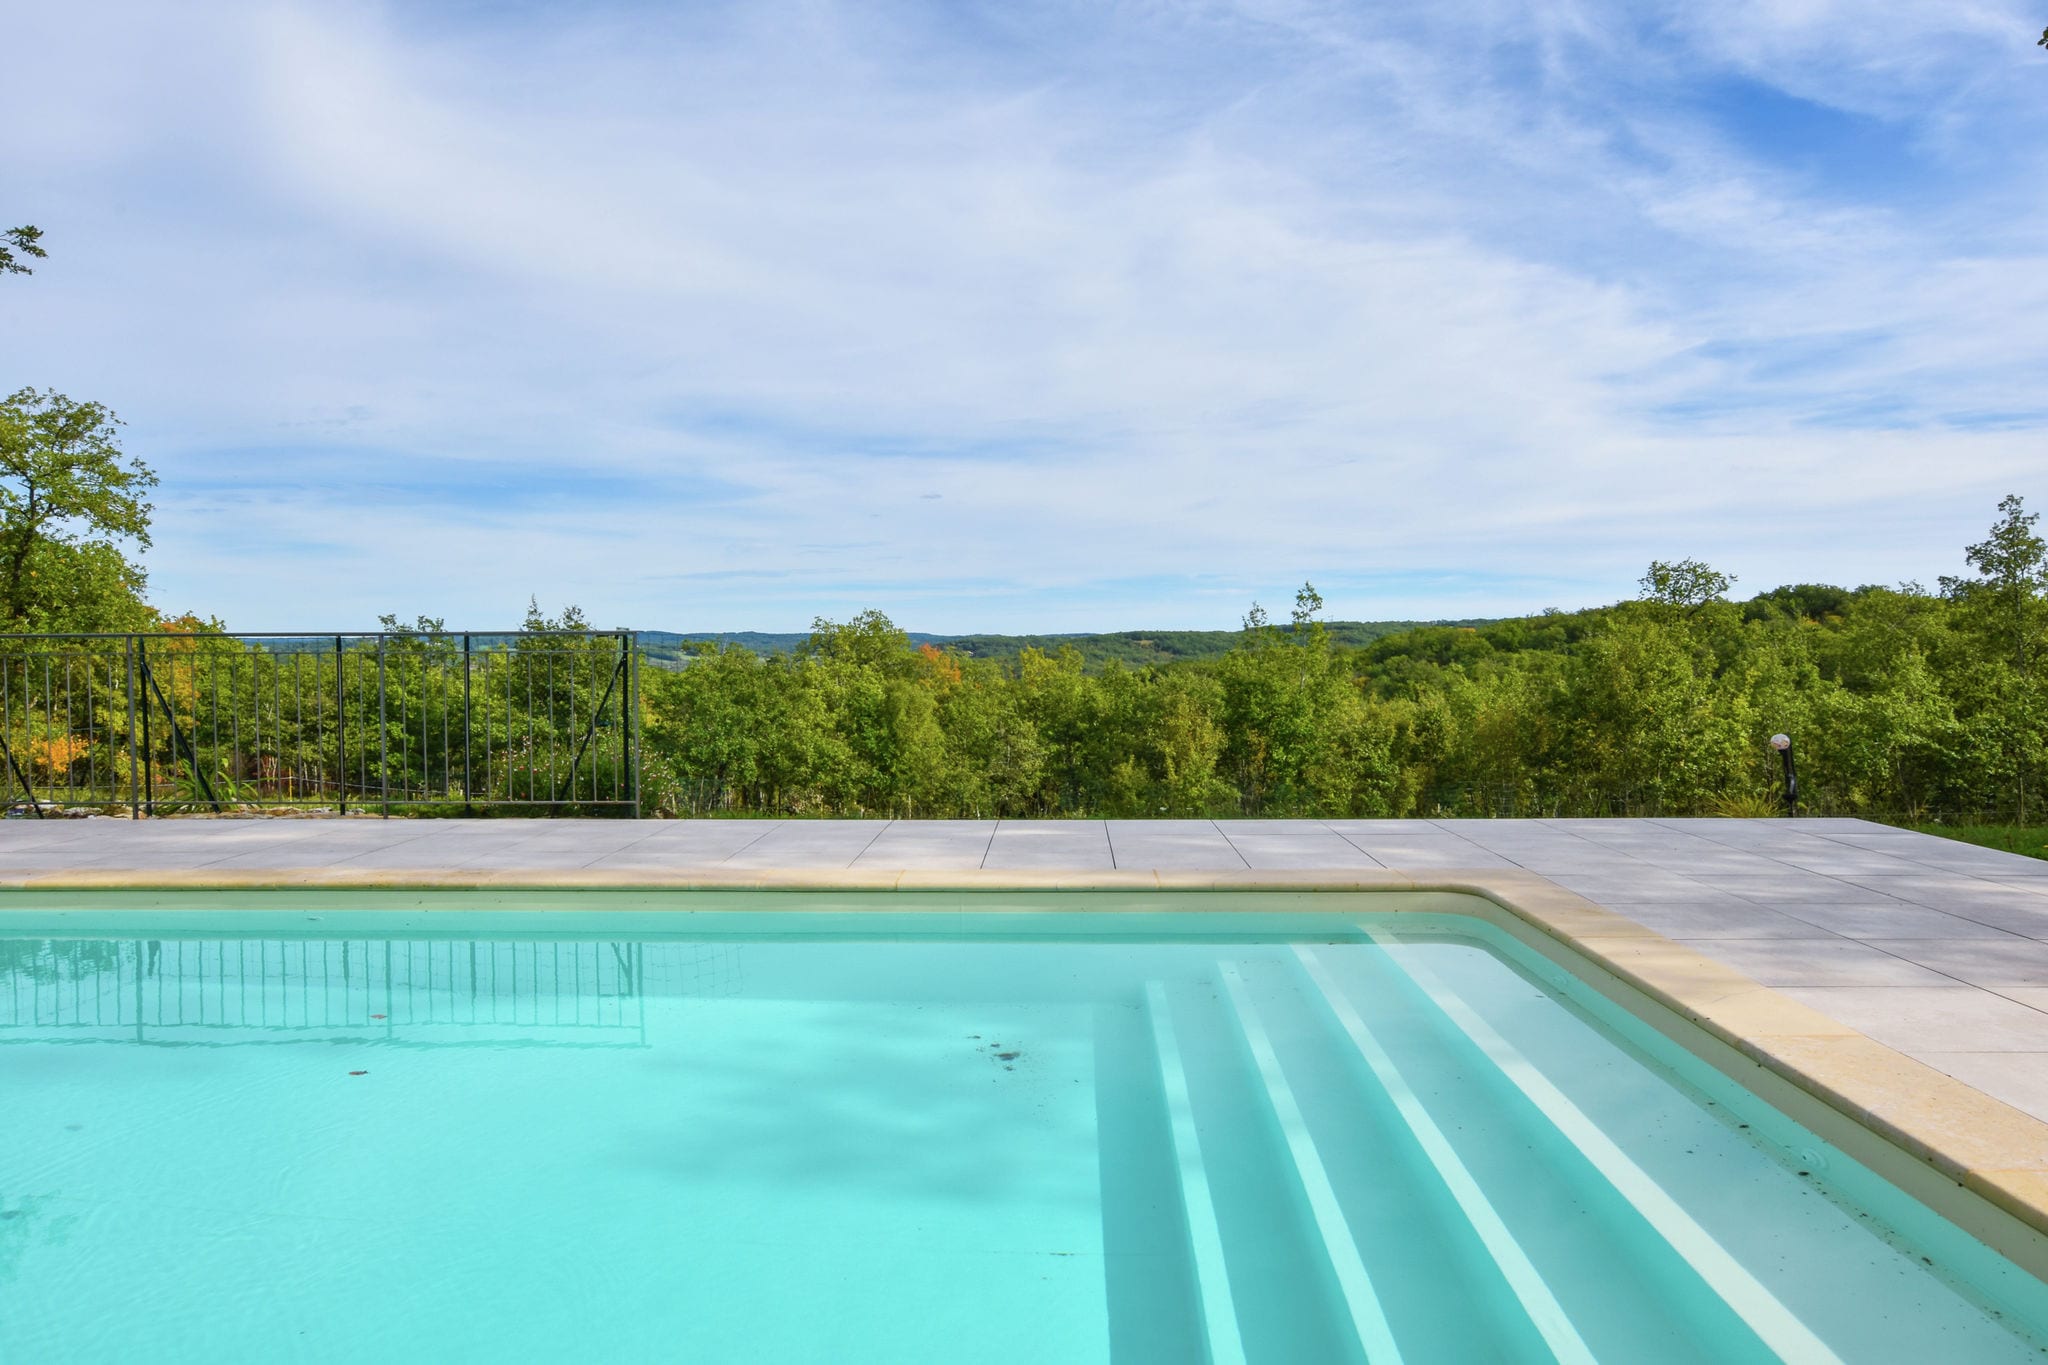 Maison de vacances idyllique à Gindou avec piscine